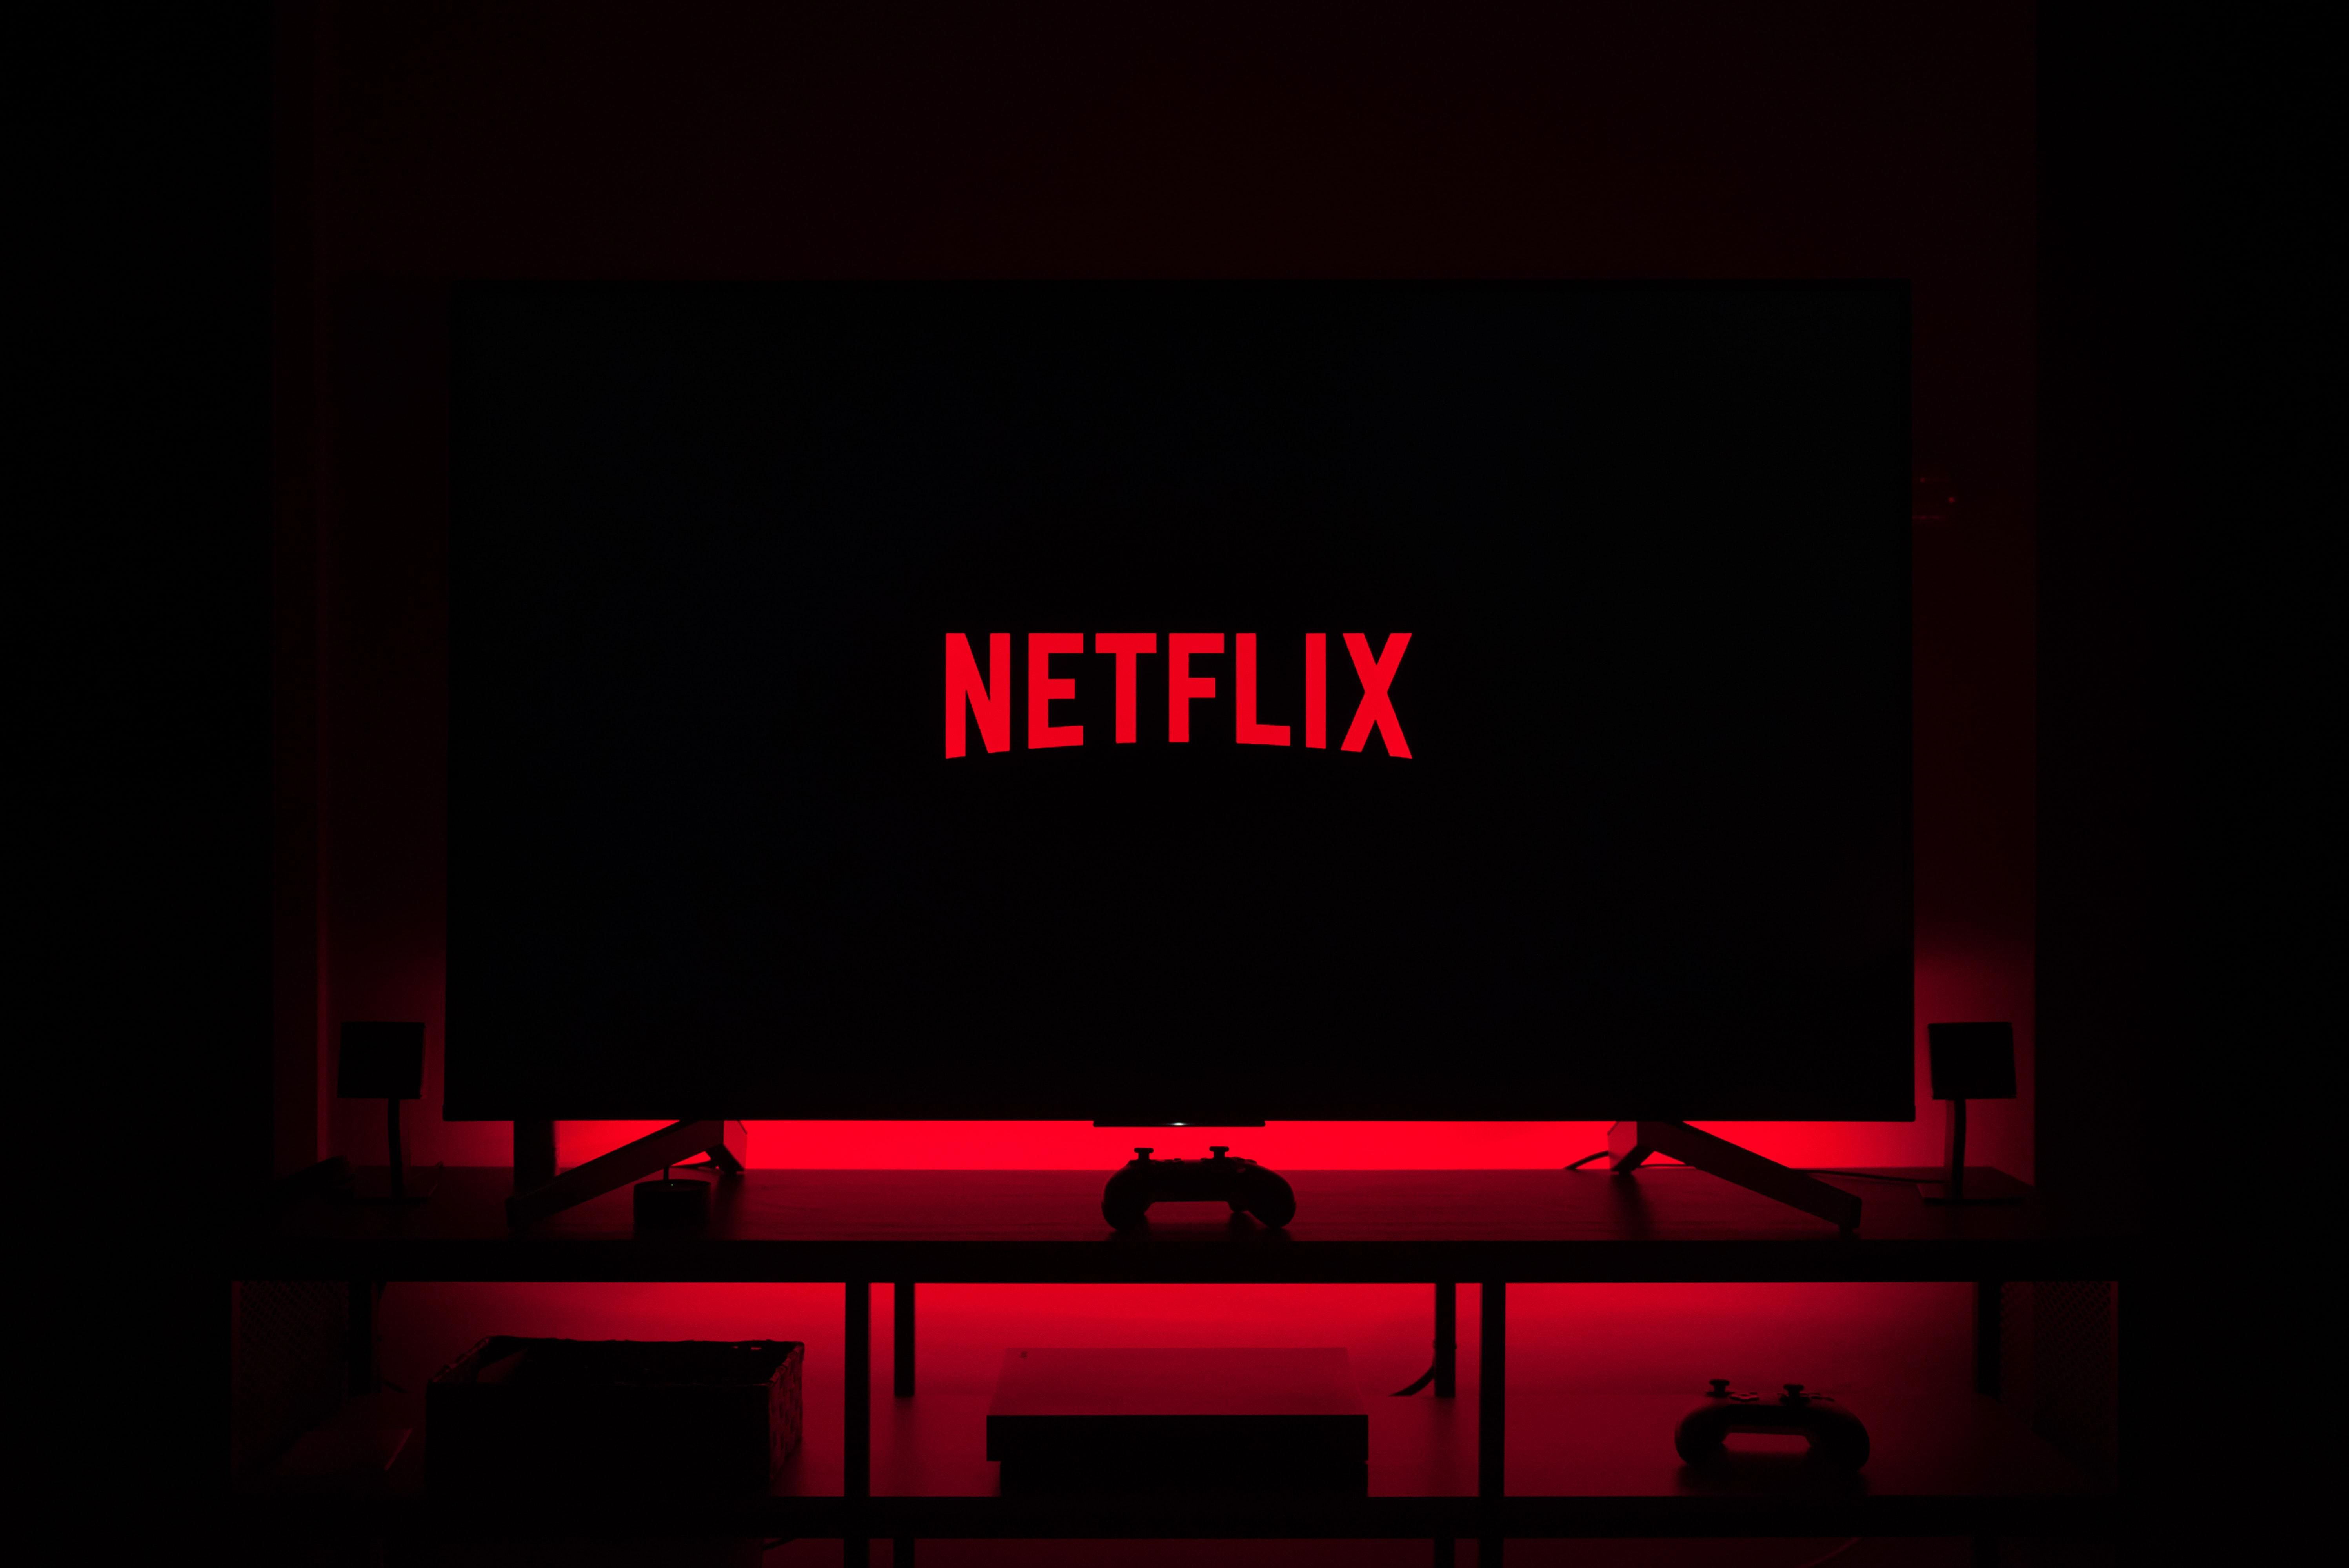 A Netflix logója látható egy okostévén, ami egy sötét szobában piros fényekkel van kivilágítva 